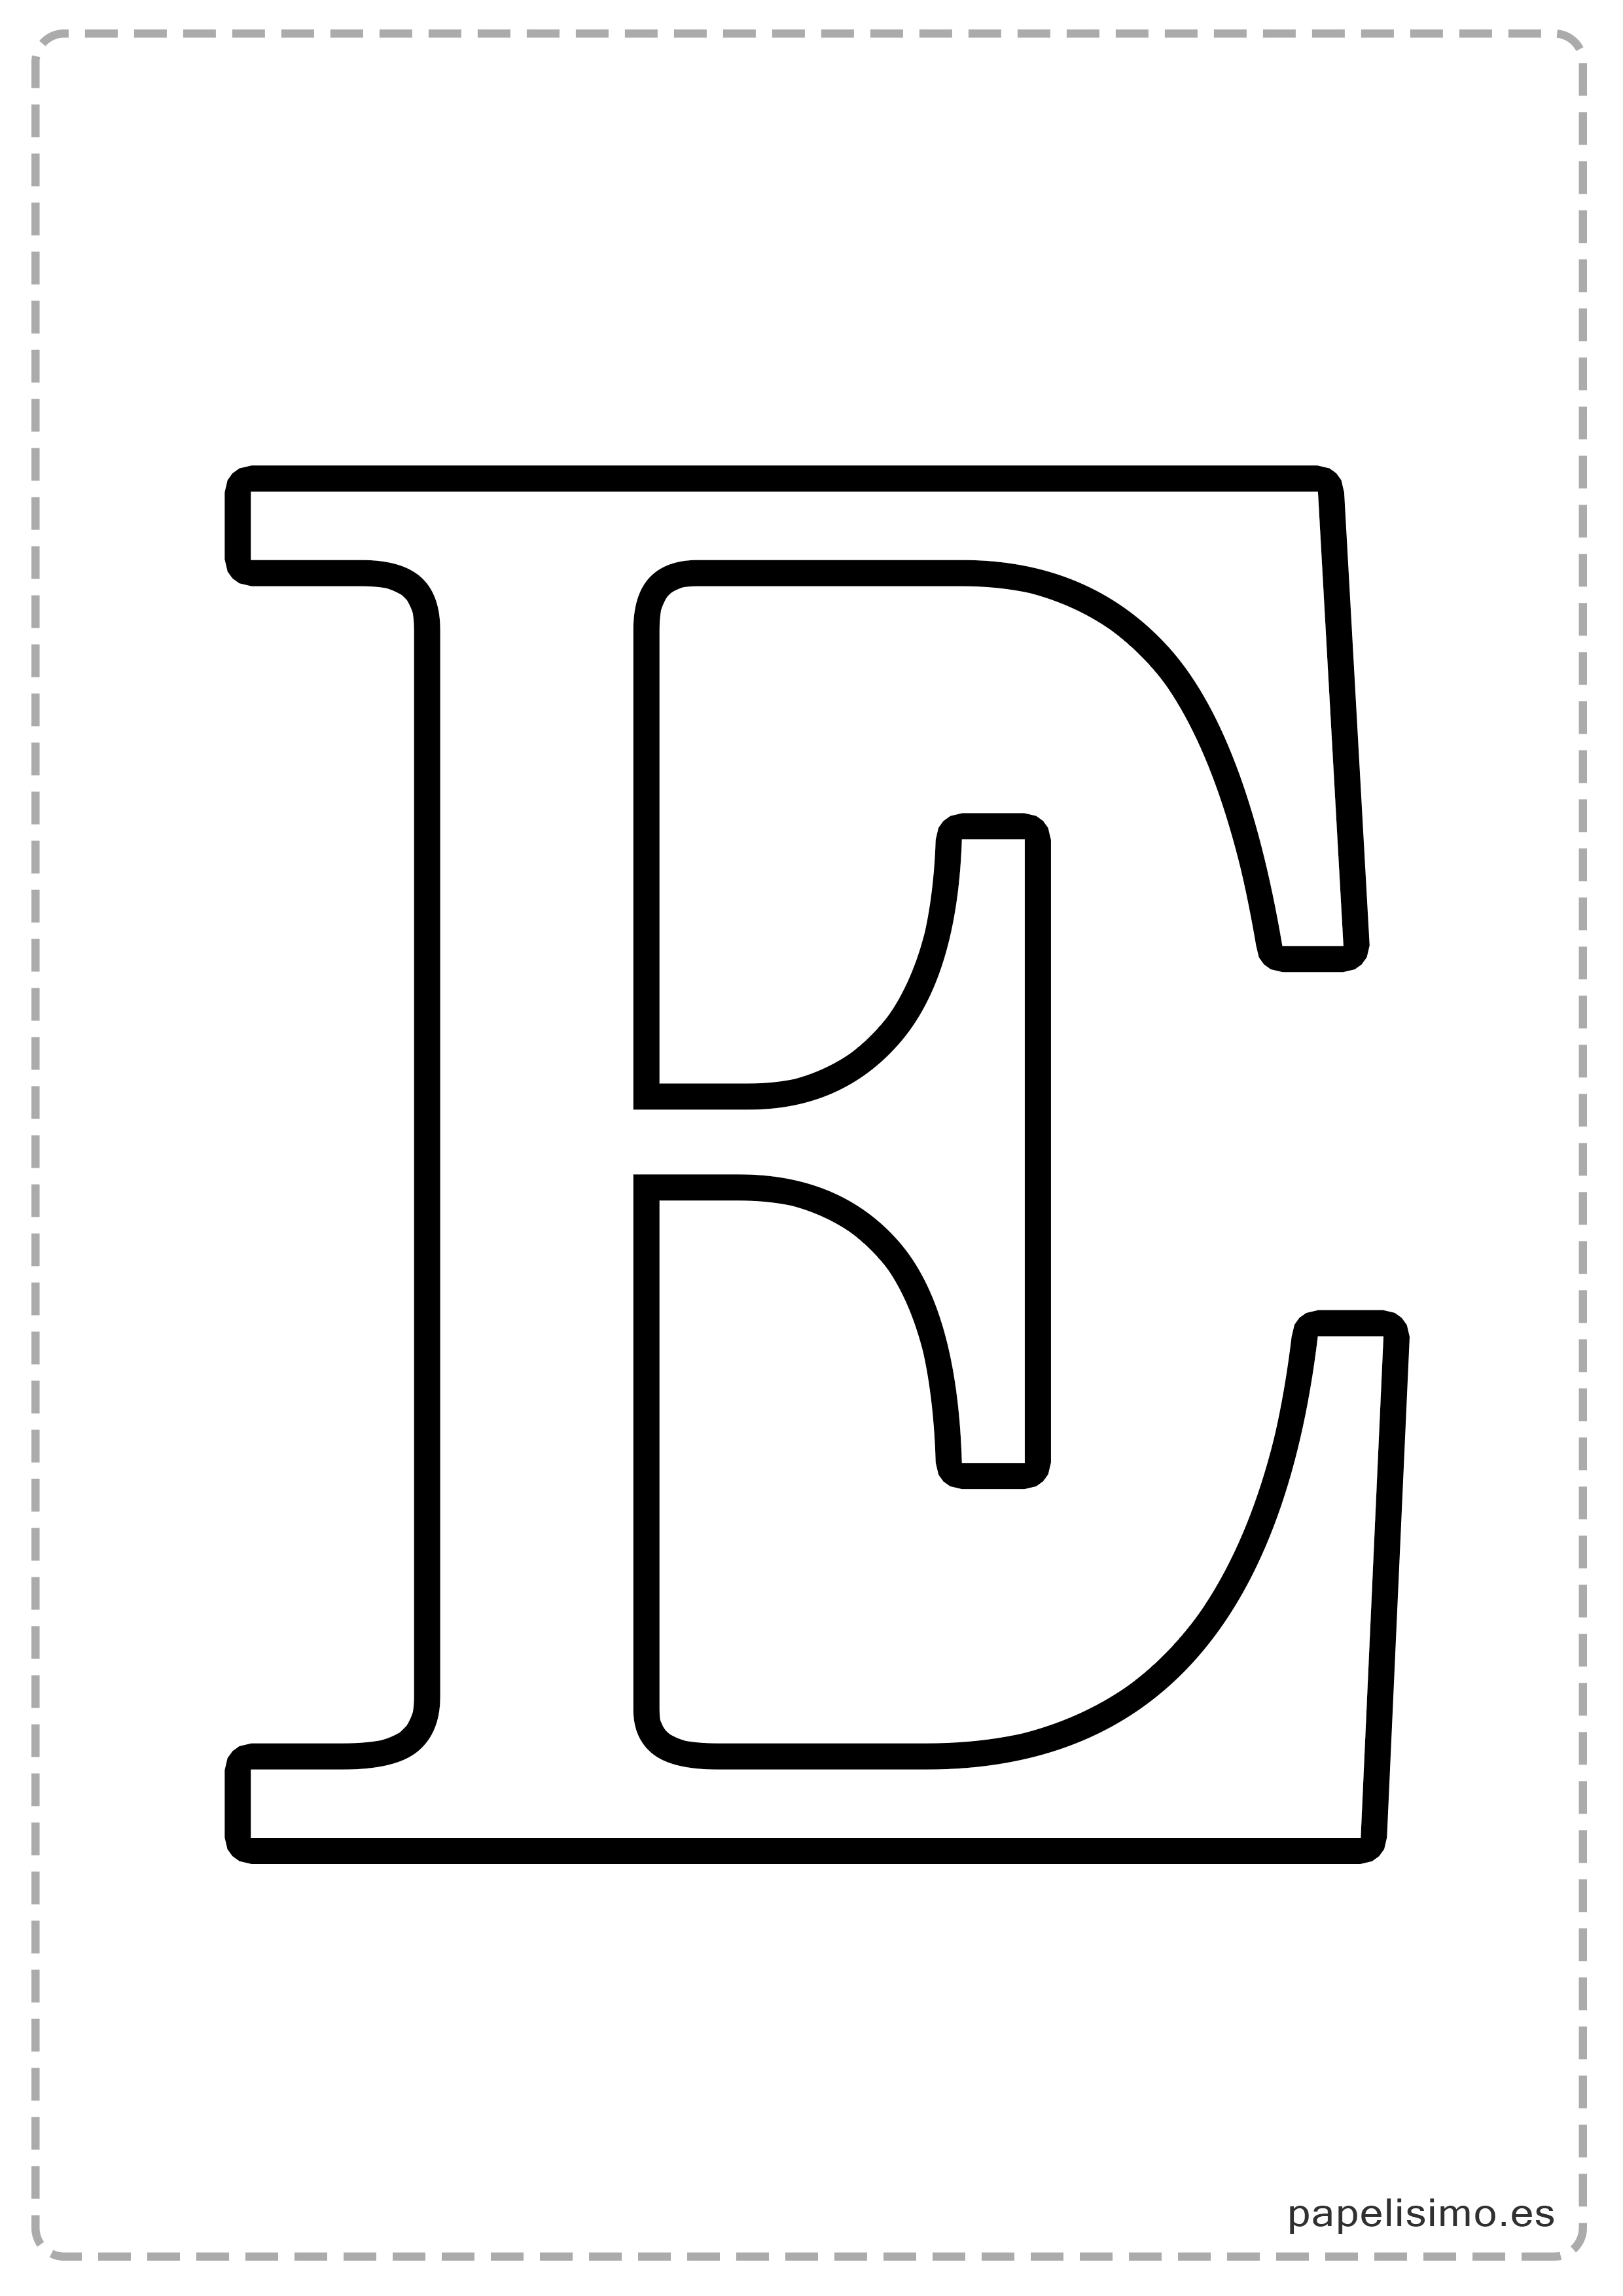 Featured image of post Abecedario De Letras Bonitas Para Imprimir El alfabeto o abecedario de una lengua o idioma es el conjunto ordenado de sus letras